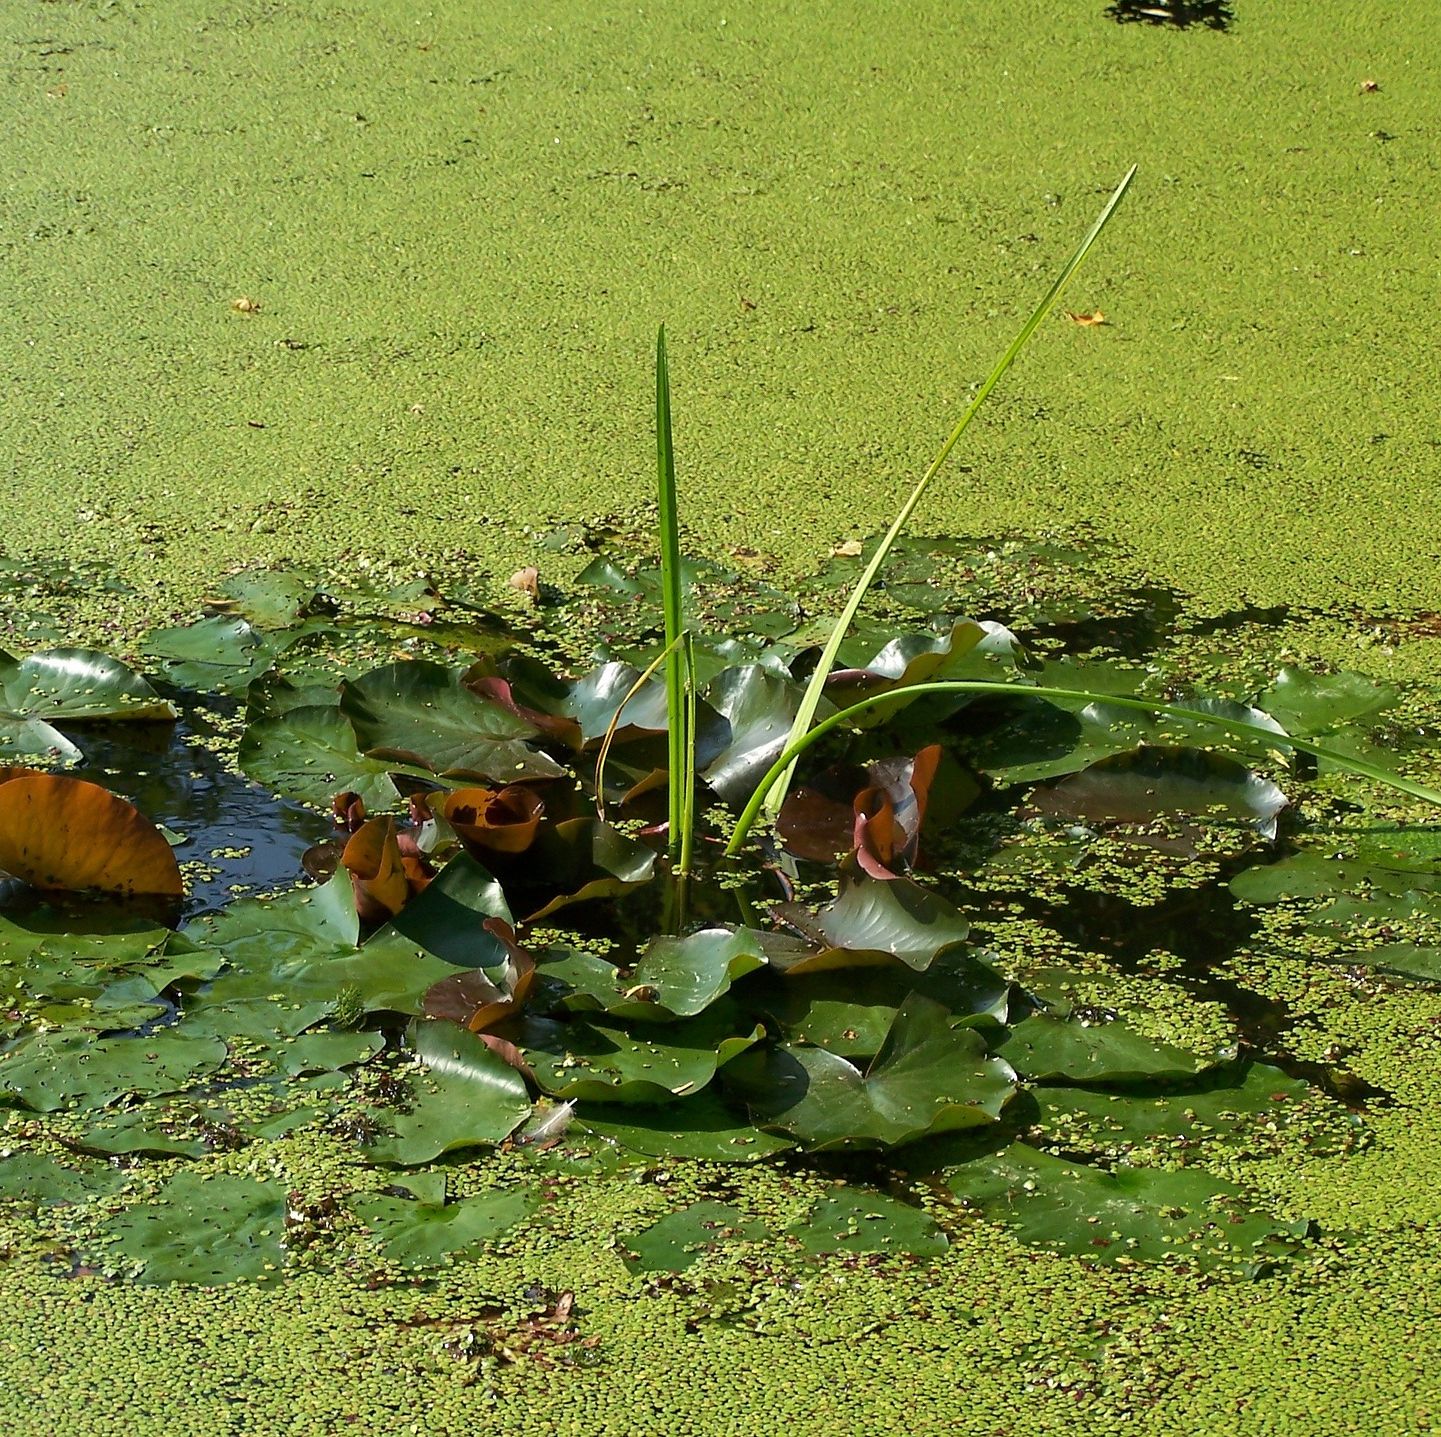 Entretien et nettoyage du bassin de jardin - Le Monde du Bassin